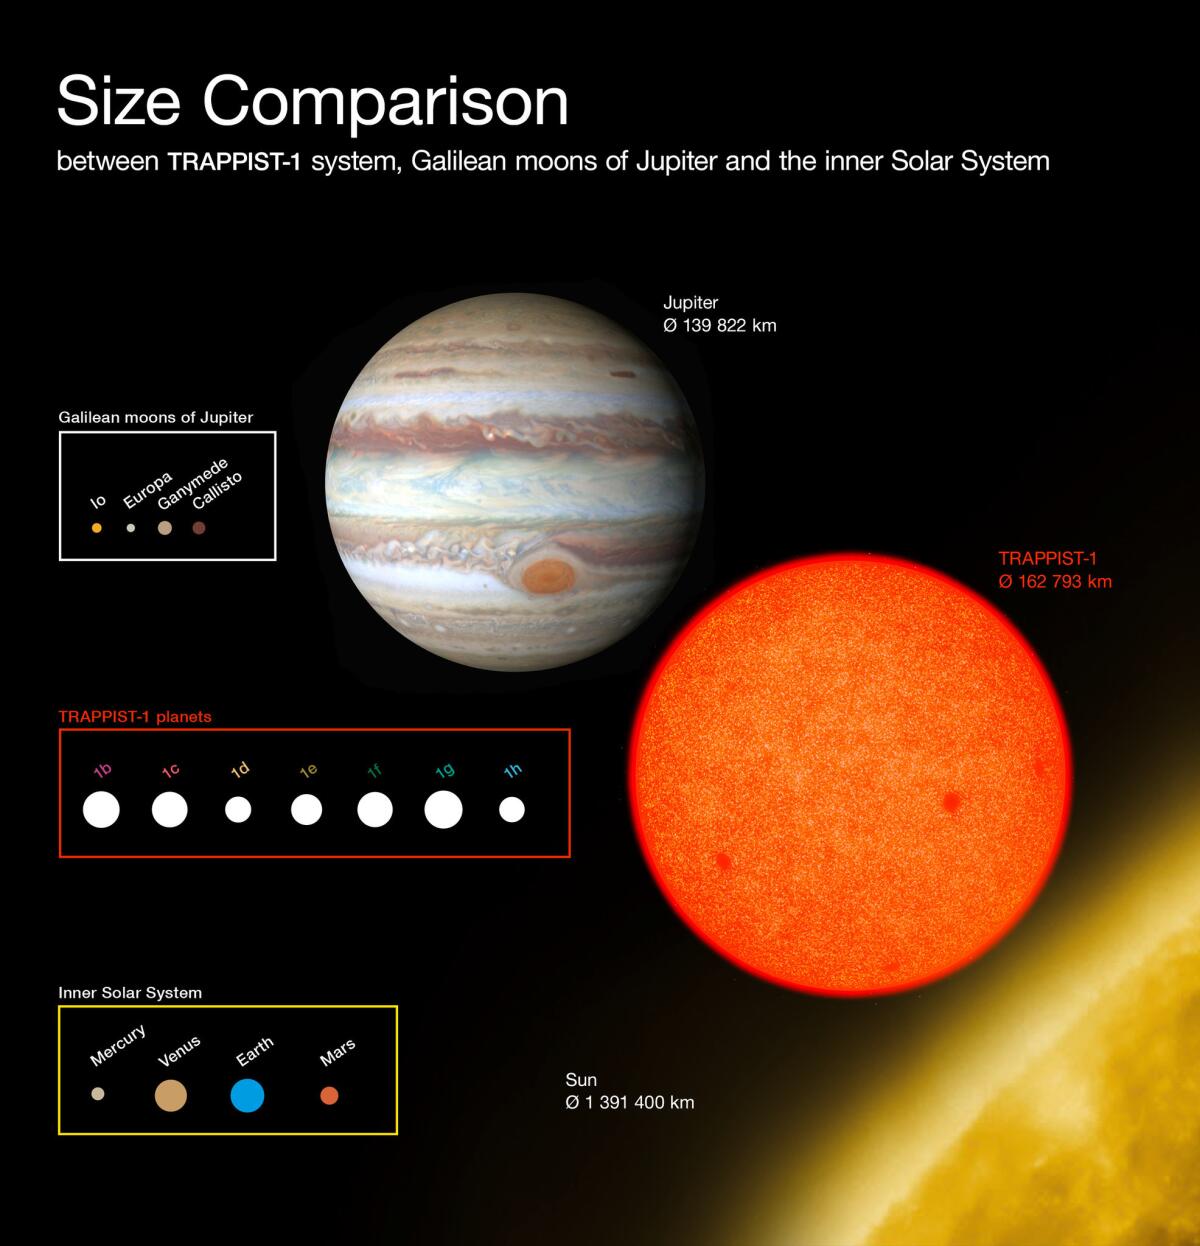 Este diagrama compara los tamaños de los planetas recién descubiertos alrededor de la débil estrella roja TRAPPIST-1, con las lunas galileanas de Júpiter y el Sistema Solar. Todos los planetas hallados en torno a TRAPPIST-1 poseen tamaño similar a la Tierra (O. Furtak / European Southern Observatory)